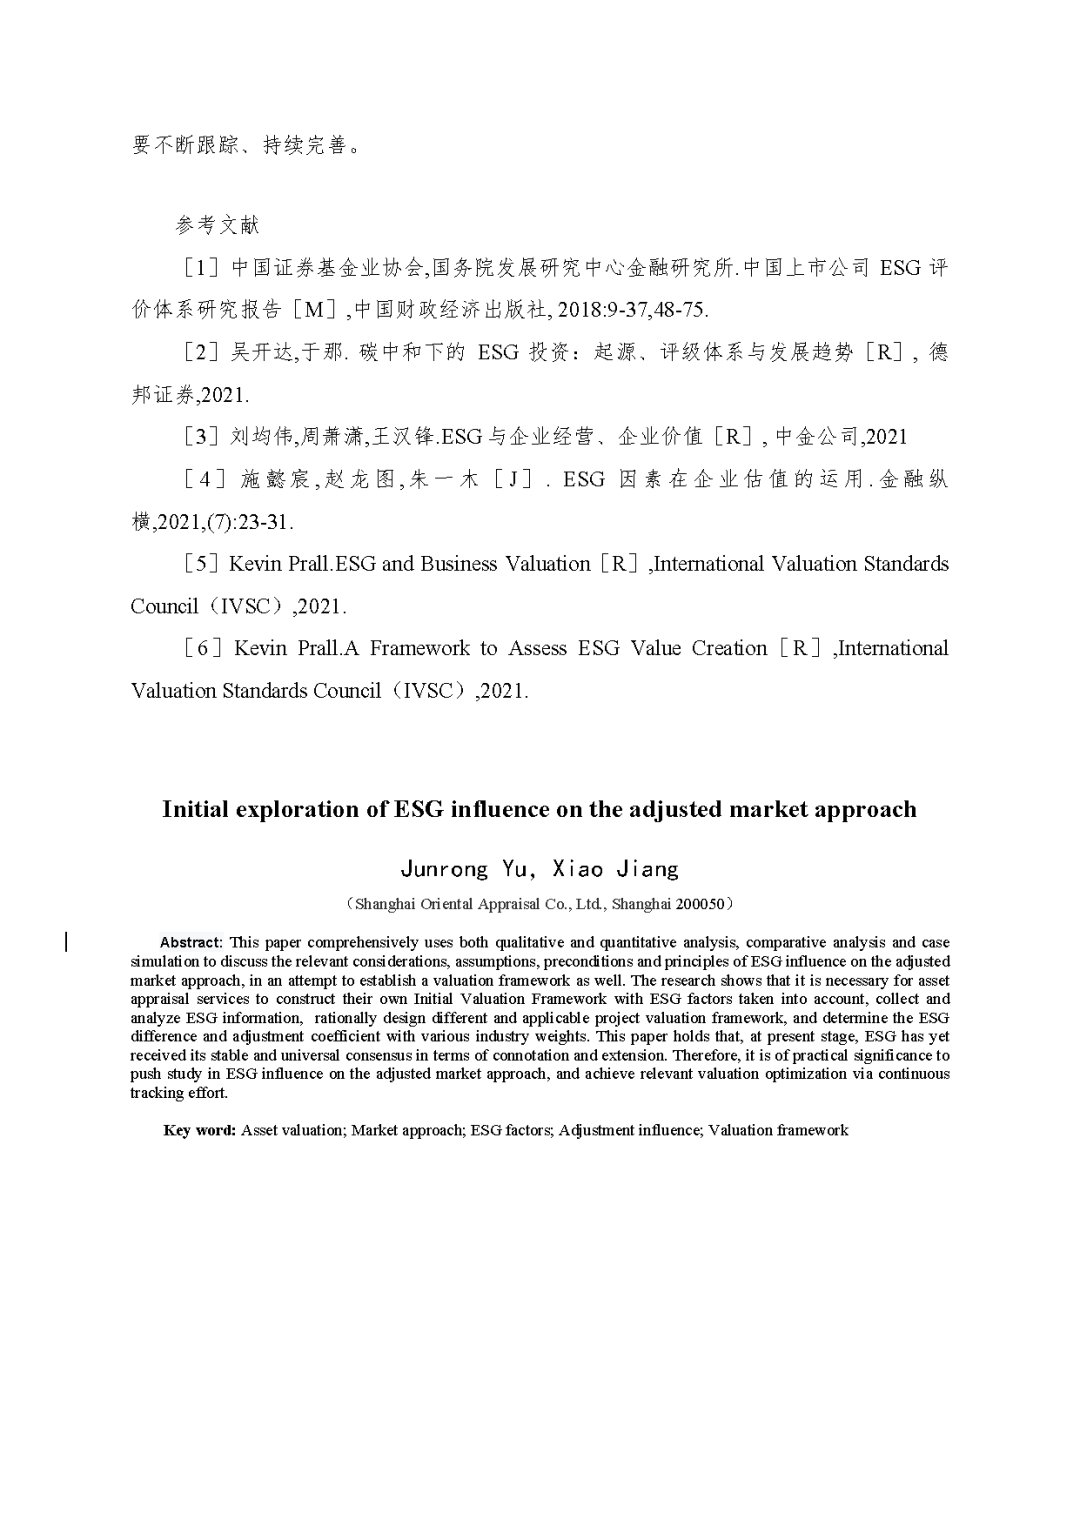 东洲评估於隽蓉、蒋骁等在《中国资产评估》发表专业文章《ESG因素对市场法修正影响的初探》